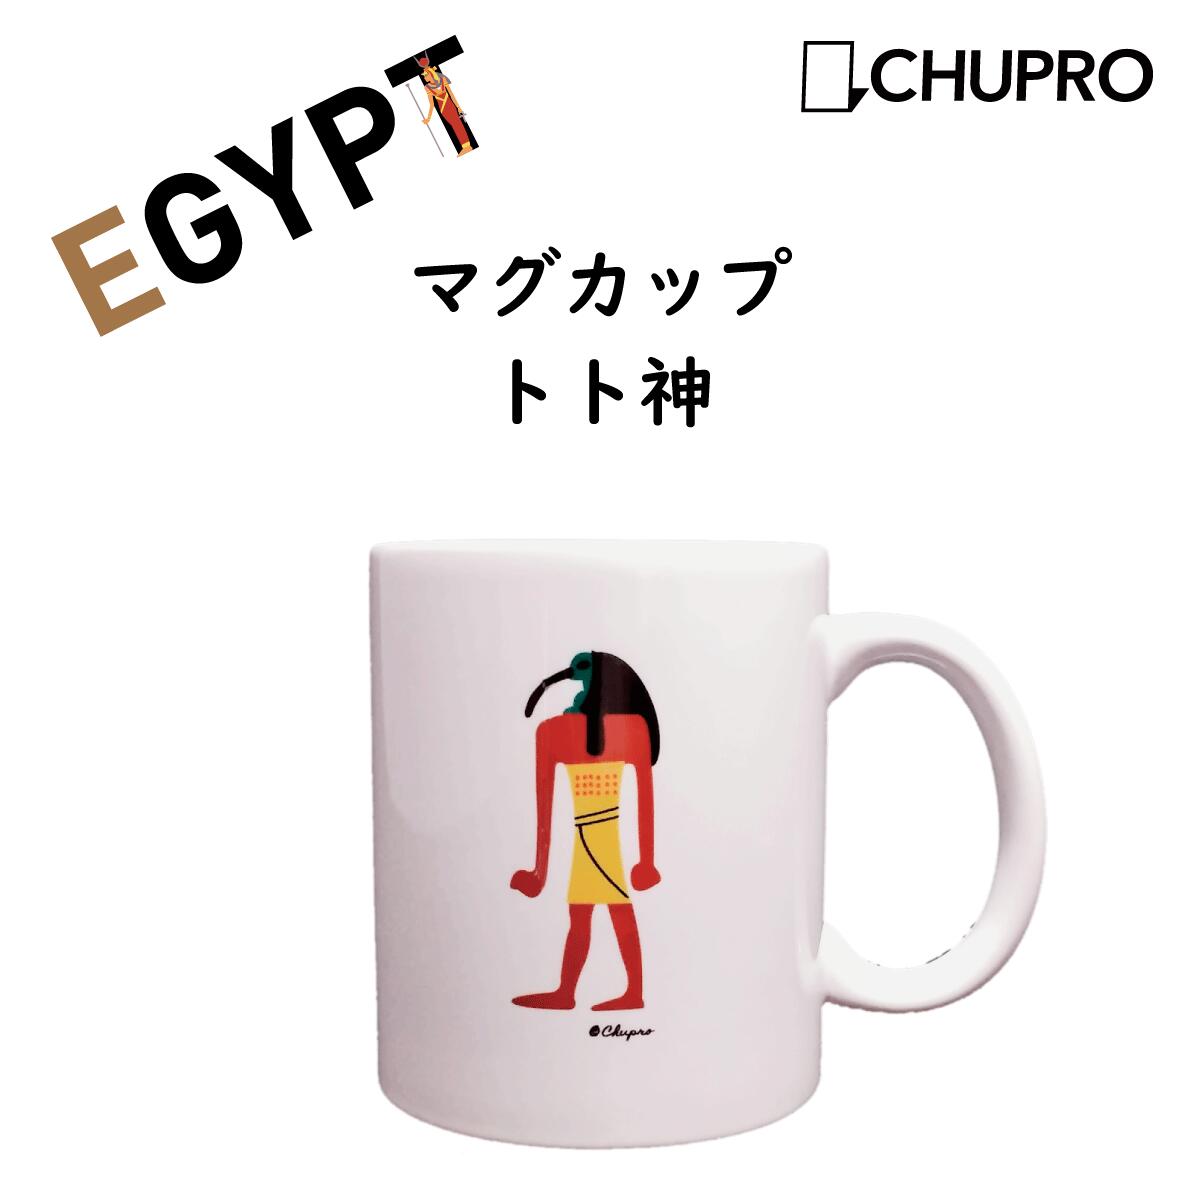 楽天市場 アヌビス マグカップ エジプトグッズ 古代エジプトの神々 ミュージアムグッズ エジプト雑貨 雑貨 コーヒーカップ ティーカップ 陶器 コーヒーマグ 日本製 おしゃれ キャラクター 考古 かわいい おもしろ 可愛い プレゼント ギフト 贈り物 中央プロセス